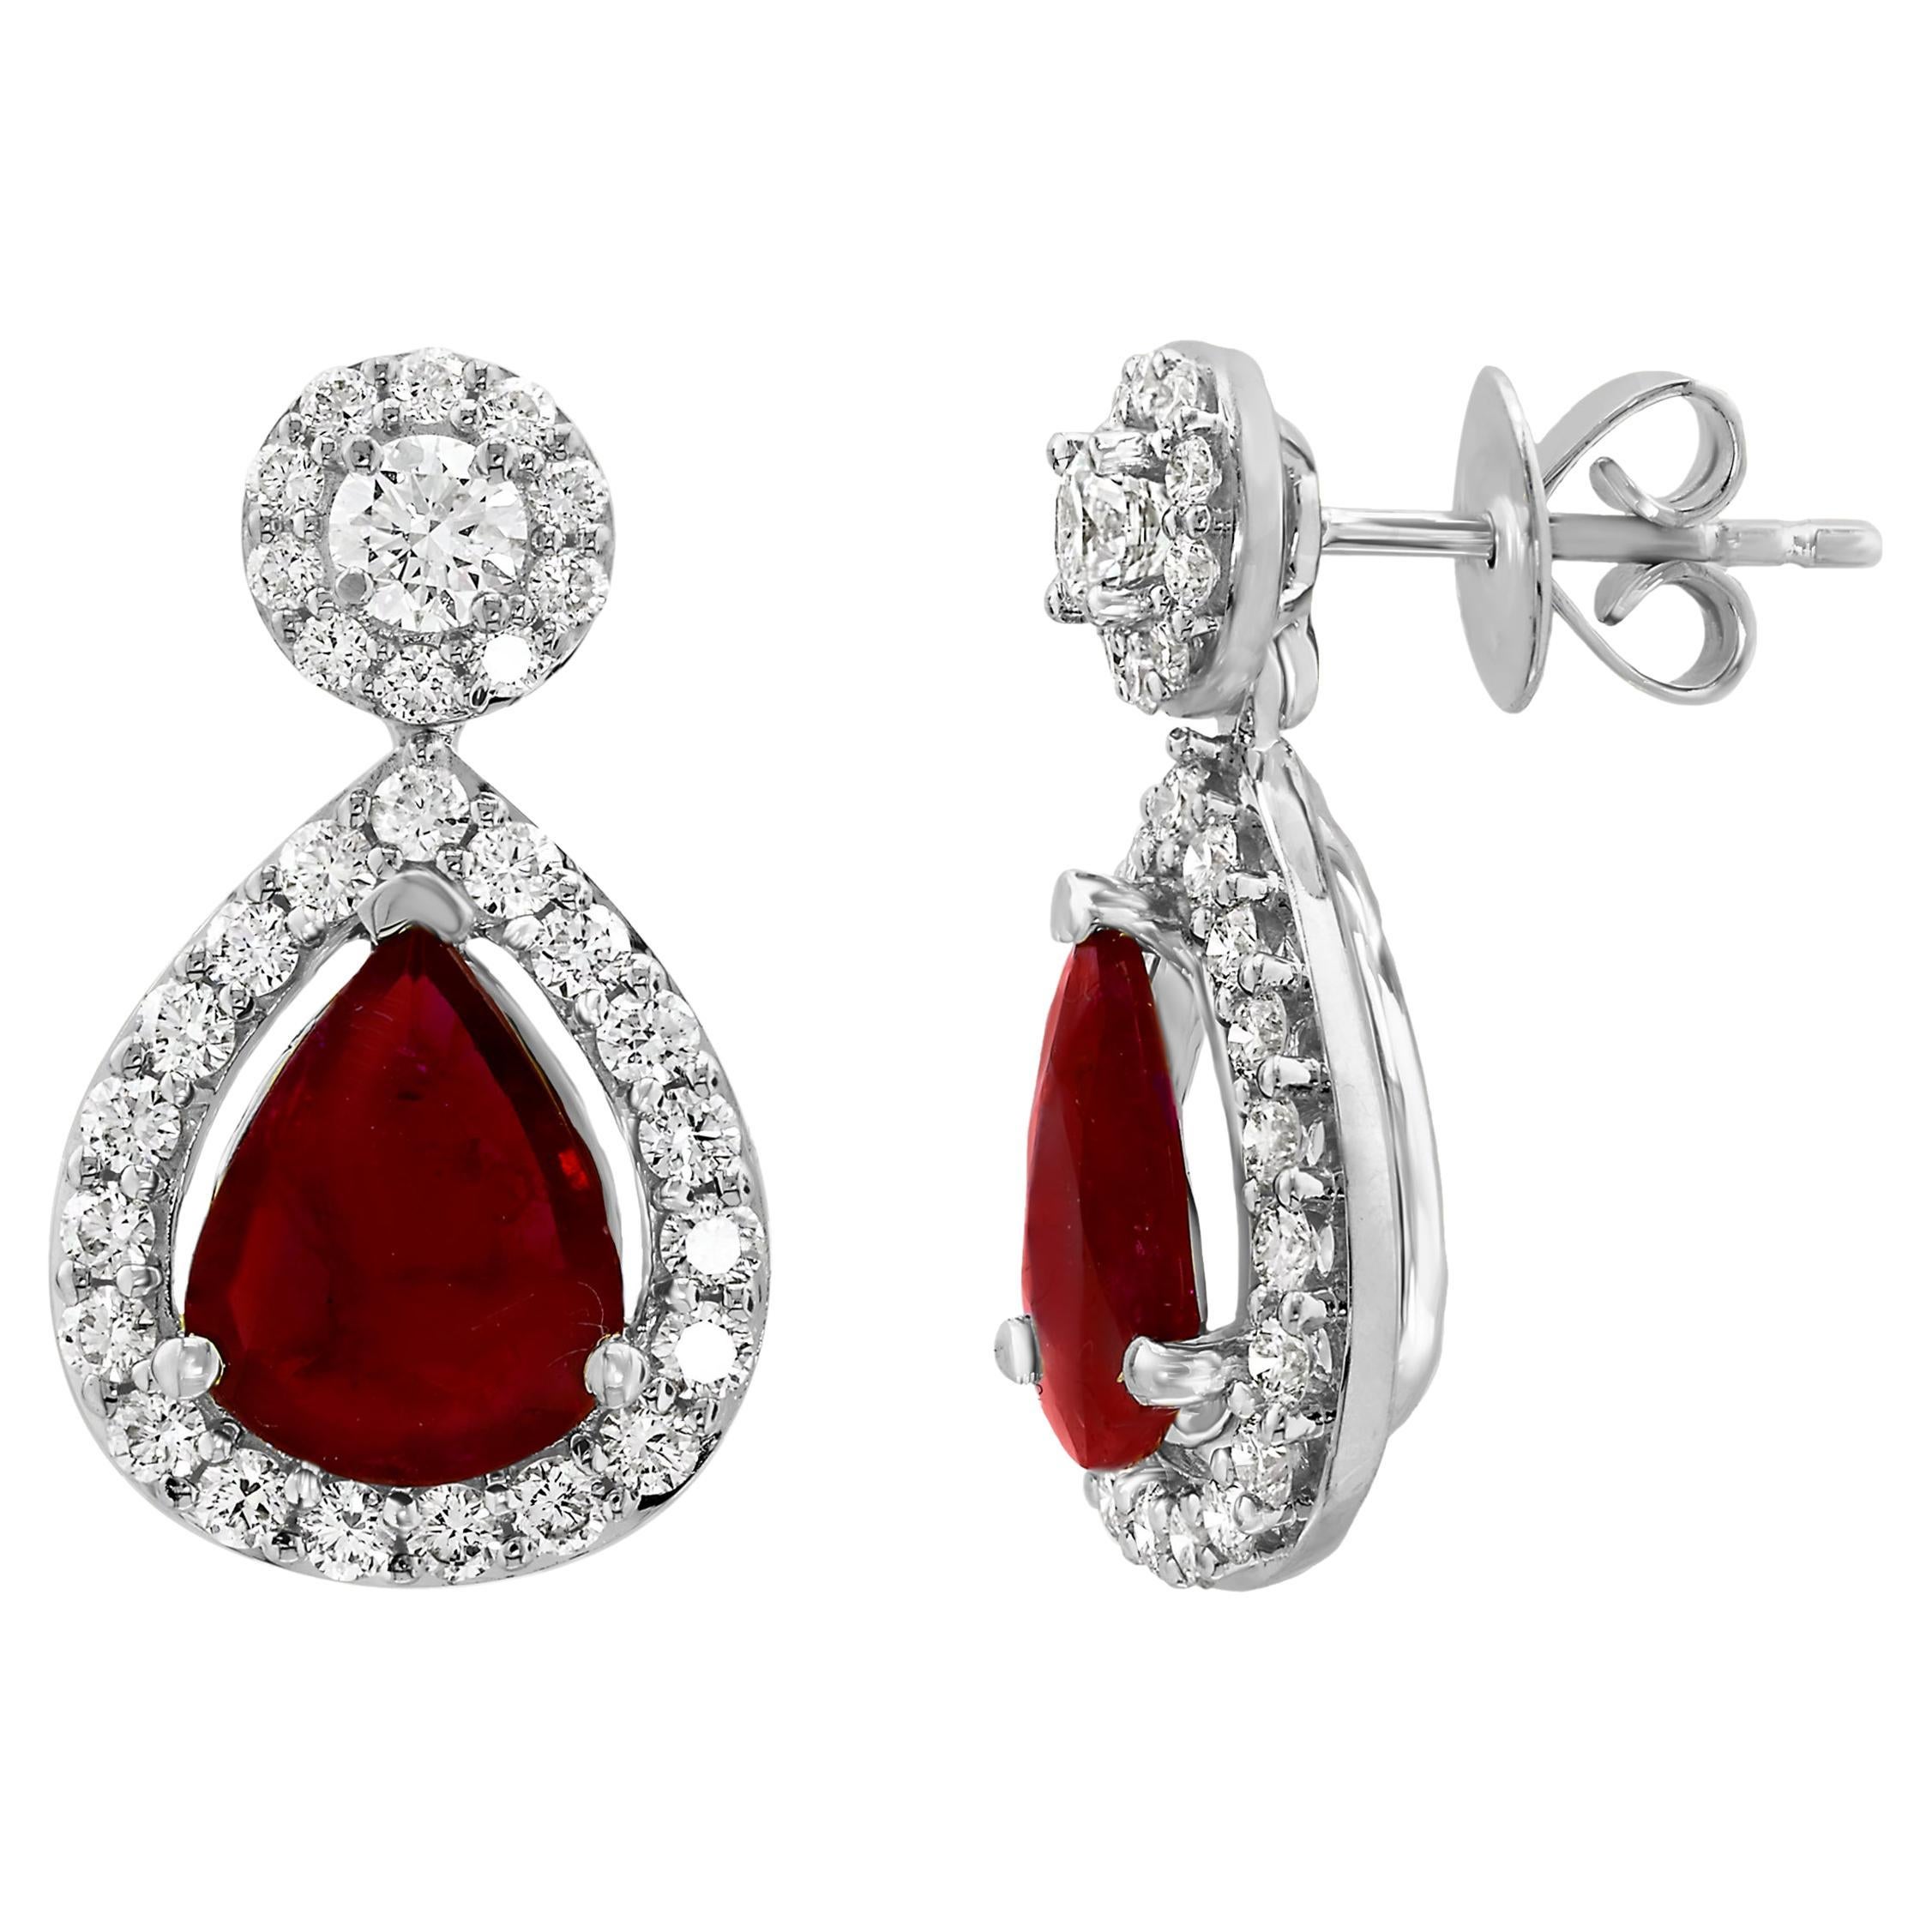 3.56 Carat of Pear Shape Ruby Diamond Drop Earrings in 18K White Gold